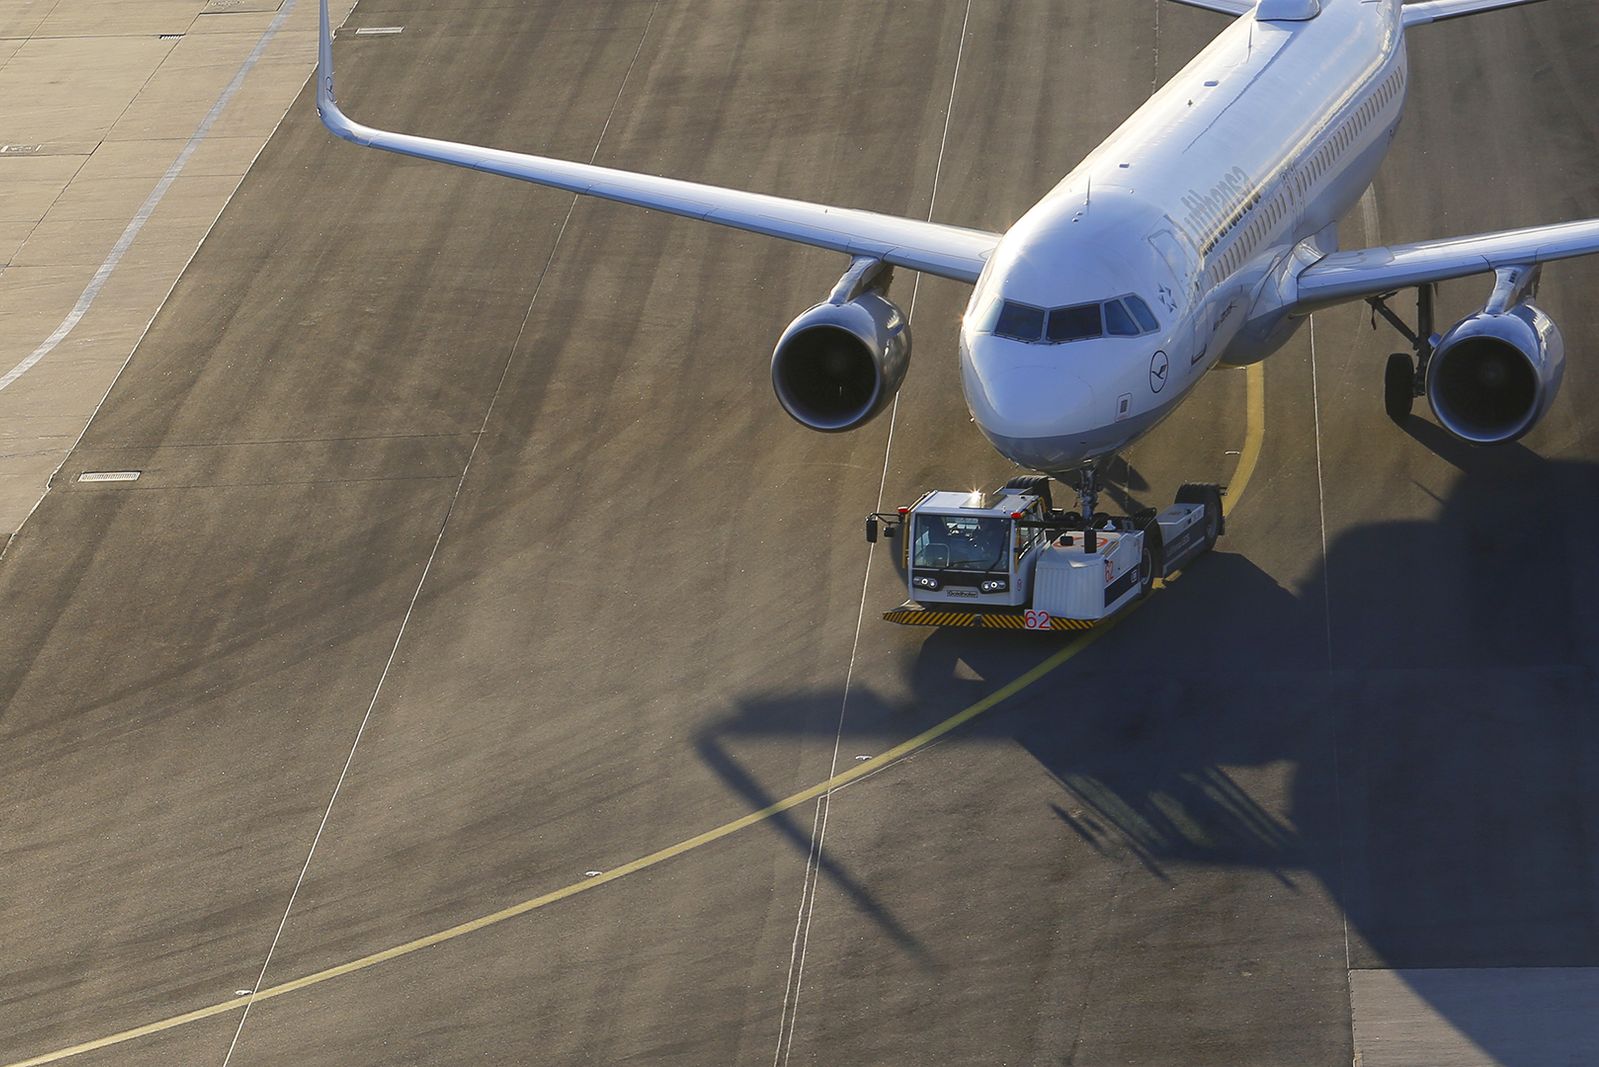 Ermittlungen nach Drohnensichtung am Flughafen Frankfurt